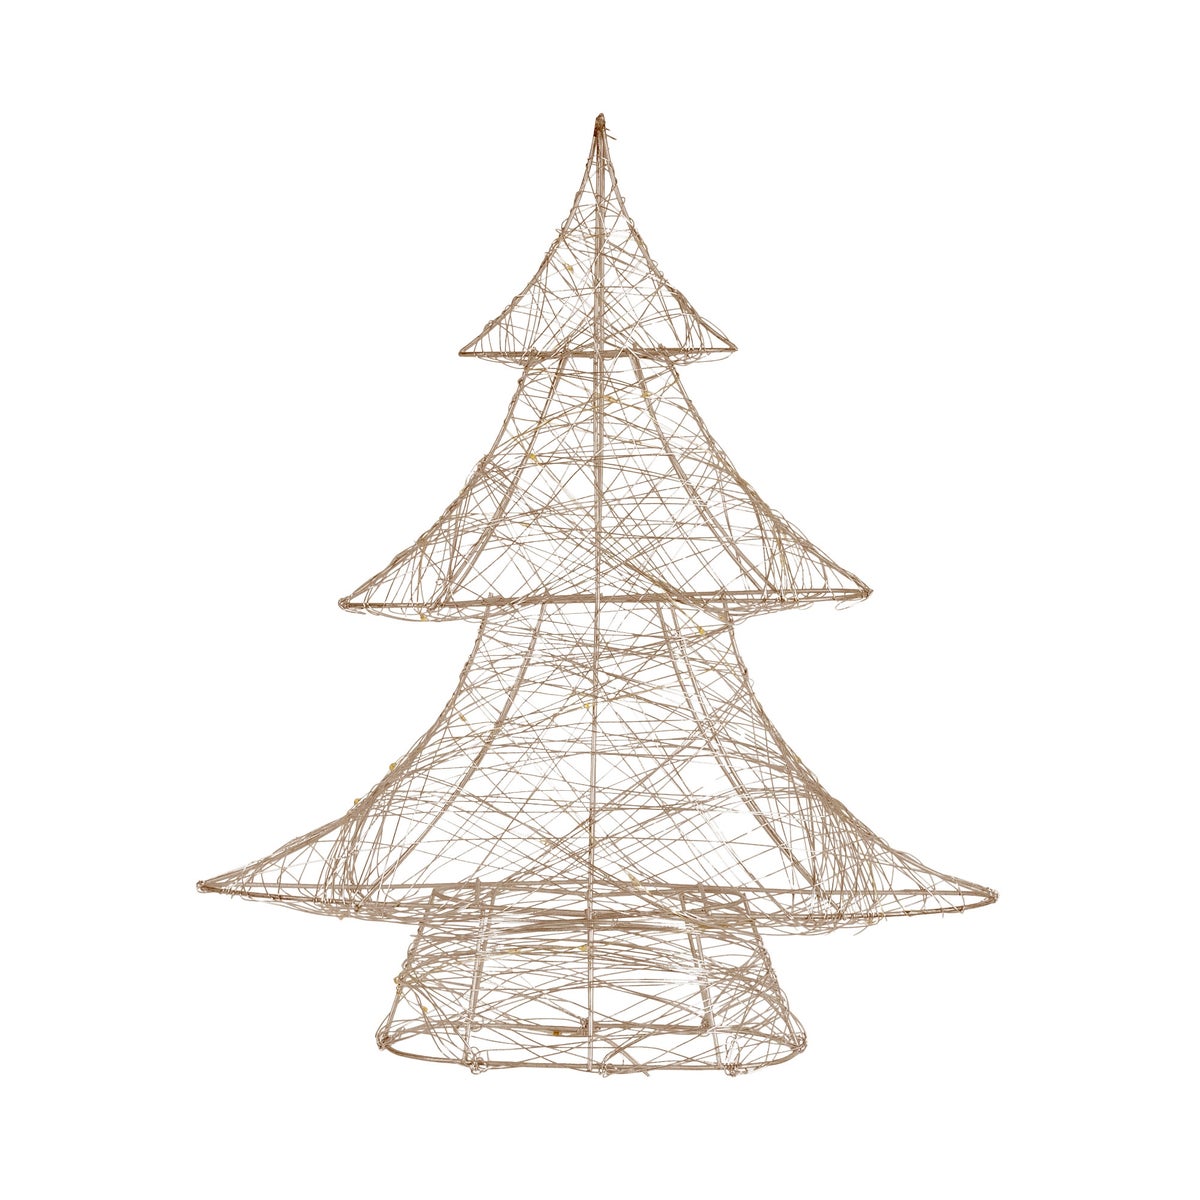 ECD Germany LED Deko Baum Weihnachten mit 30 warmweißen LEDs, 40 cm hoch, Metall, Gold, Weihnachtsbaum mit Beleuchtung &amp; Timer, Innen, batteriebetrieben, Lichterbaum Tanne stehend Weihnachtsdeko